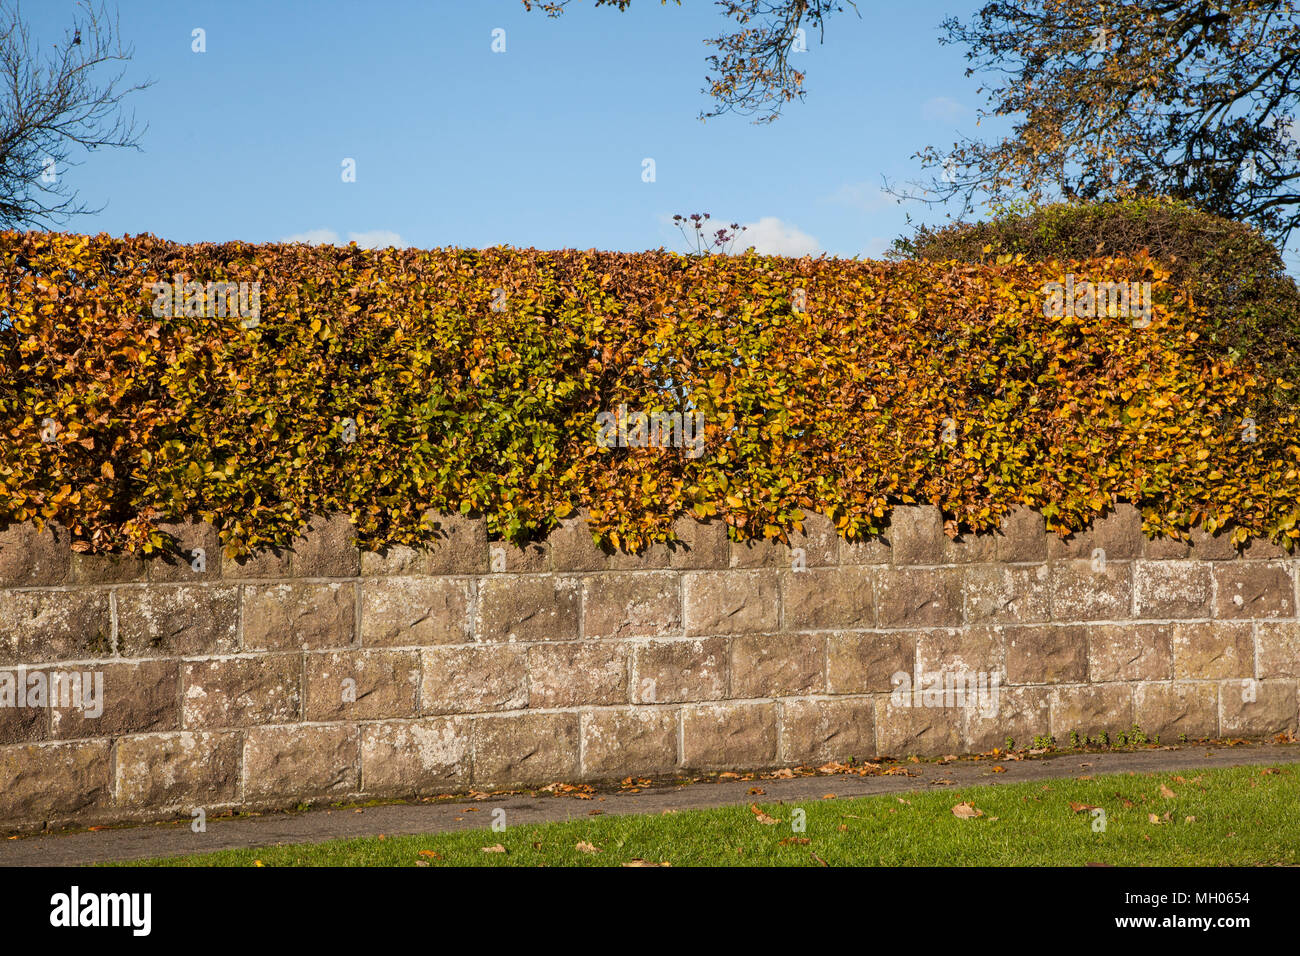 Buche hedge ‎Fagus sylvatica seinen frühen Herbst Farben als Ostindischen zu einem Englischen Garten oberhalb einer Wand anzeigen Stockfoto